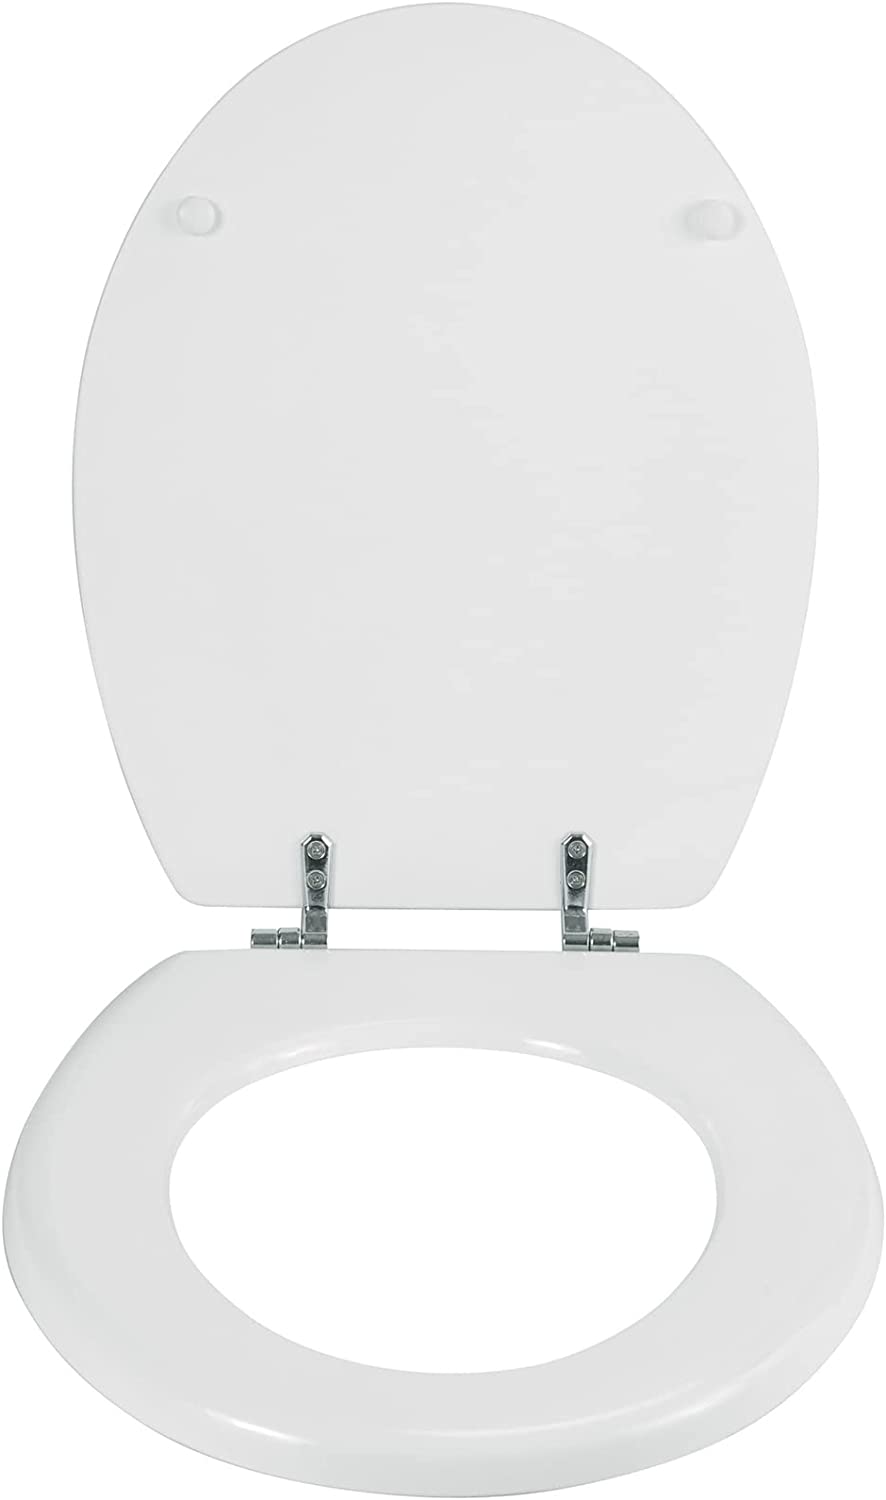 WC-Sitz Bali Weiß - Toilettensitz, rostfreie Edelstahlbefestigung, MDF, 35 x 42 cm, Weiß